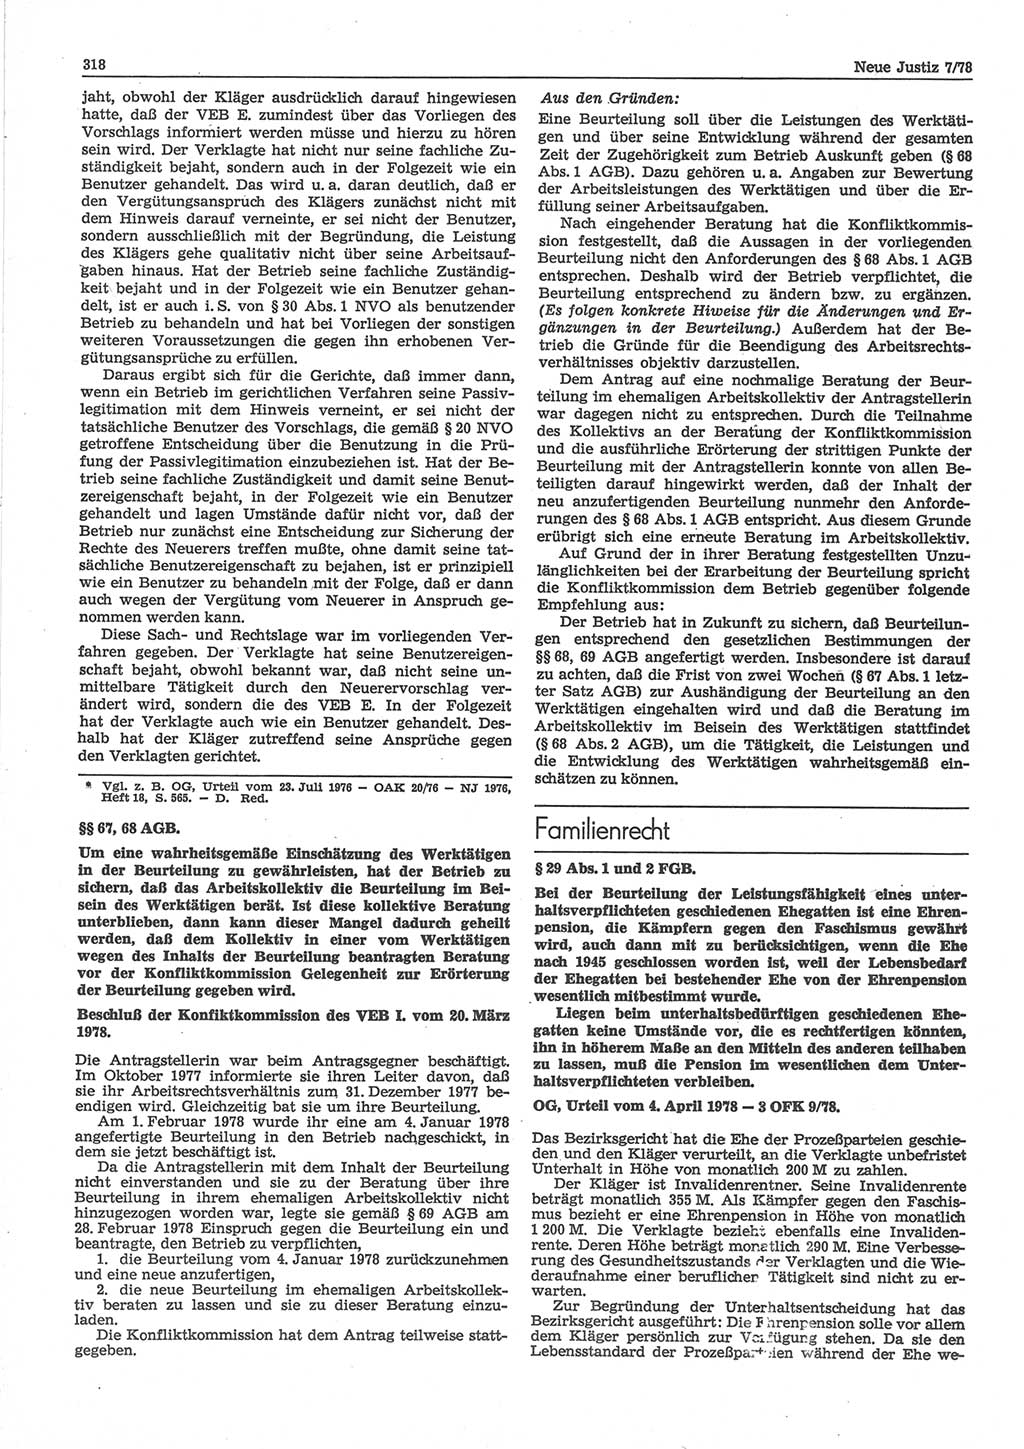 Neue Justiz (NJ), Zeitschrift für sozialistisches Recht und Gesetzlichkeit [Deutsche Demokratische Republik (DDR)], 32. Jahrgang 1978, Seite 318 (NJ DDR 1978, S. 318)